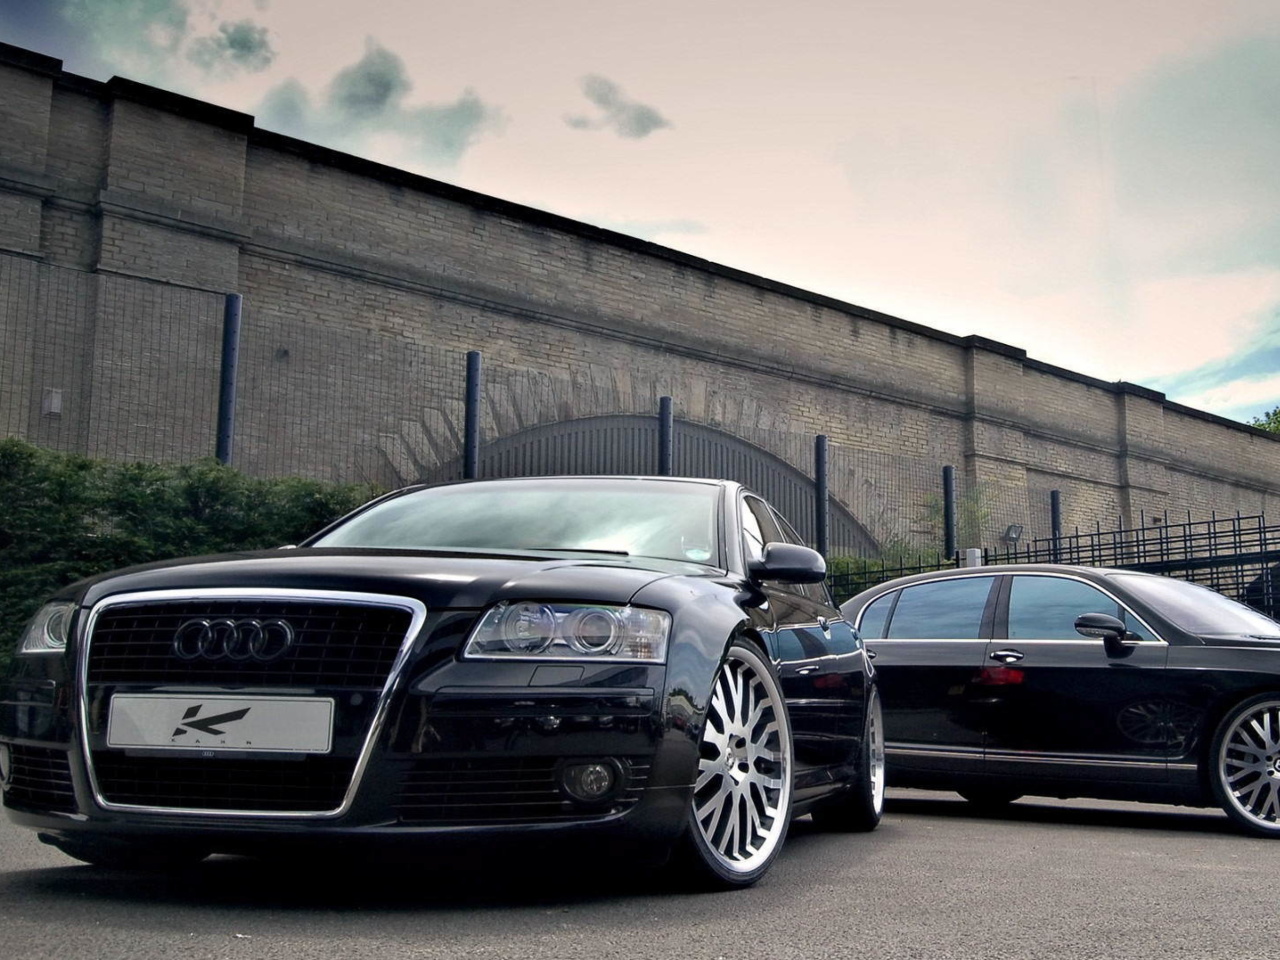 Fondo de pantalla Audi A8 and Bentley, One Platform 1280x960